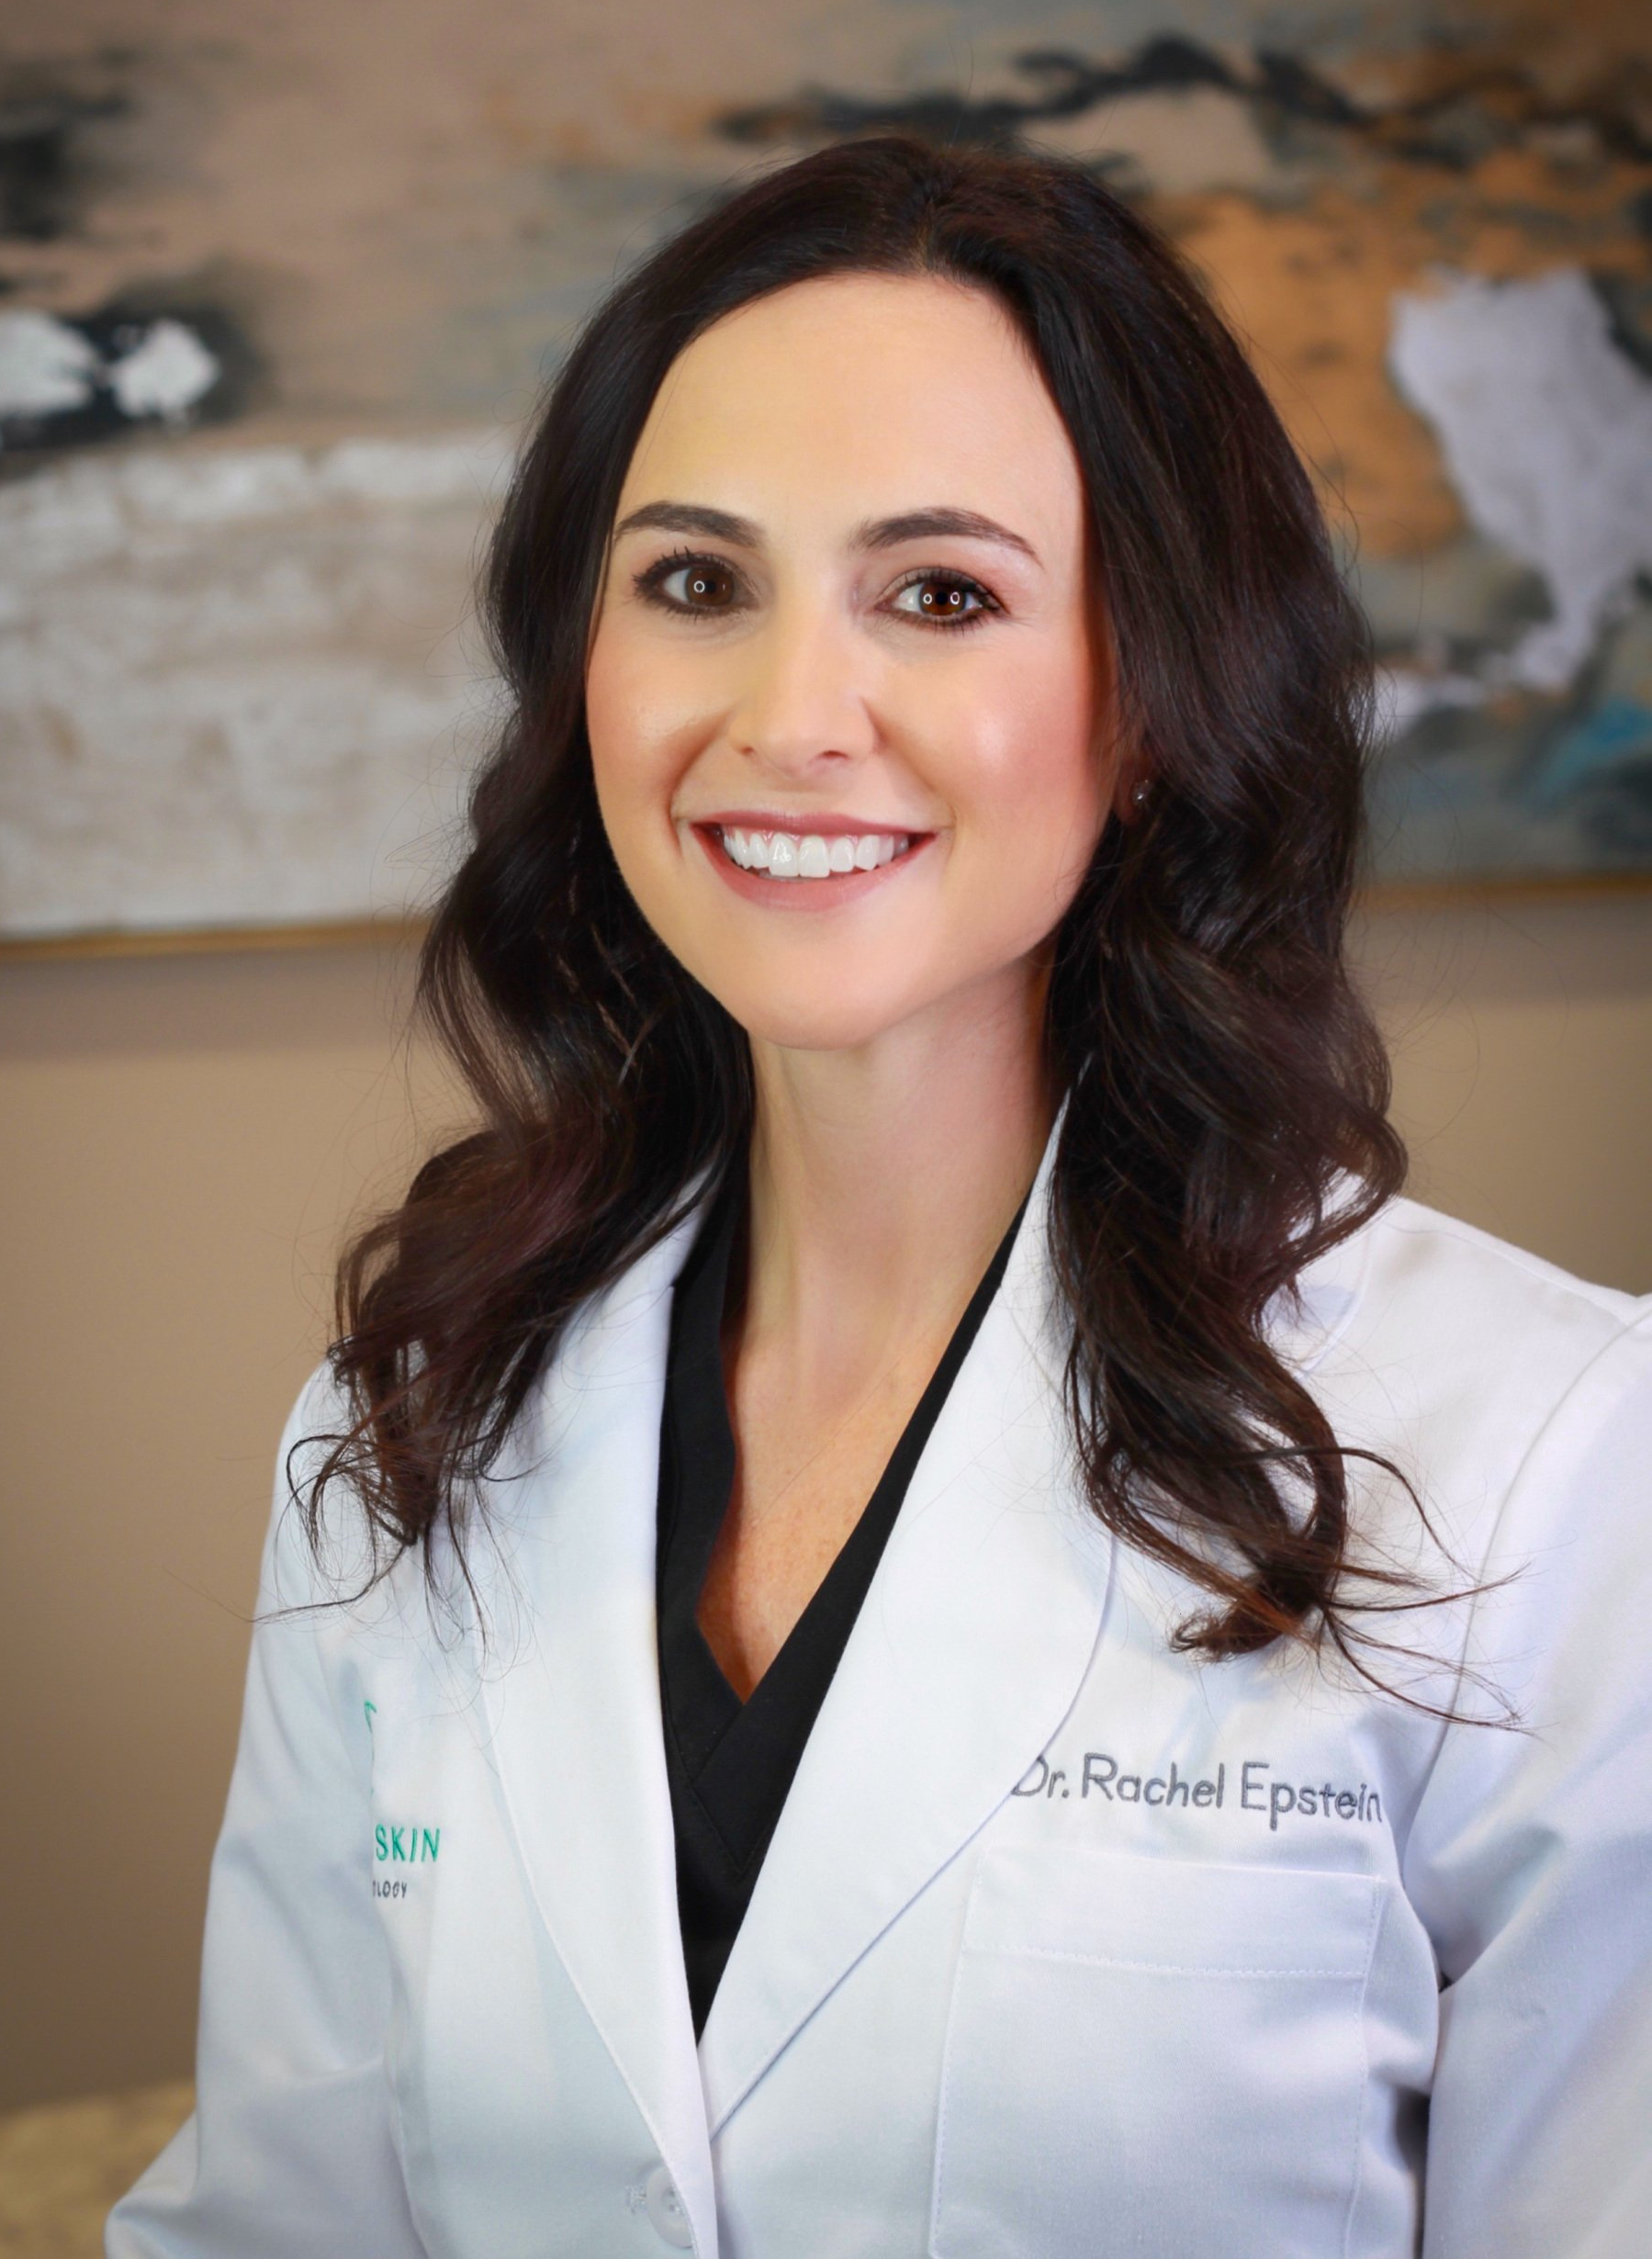 Photo of Dr. Rachel Epstein, a board-certified dermatologist in Clearwater, FL.